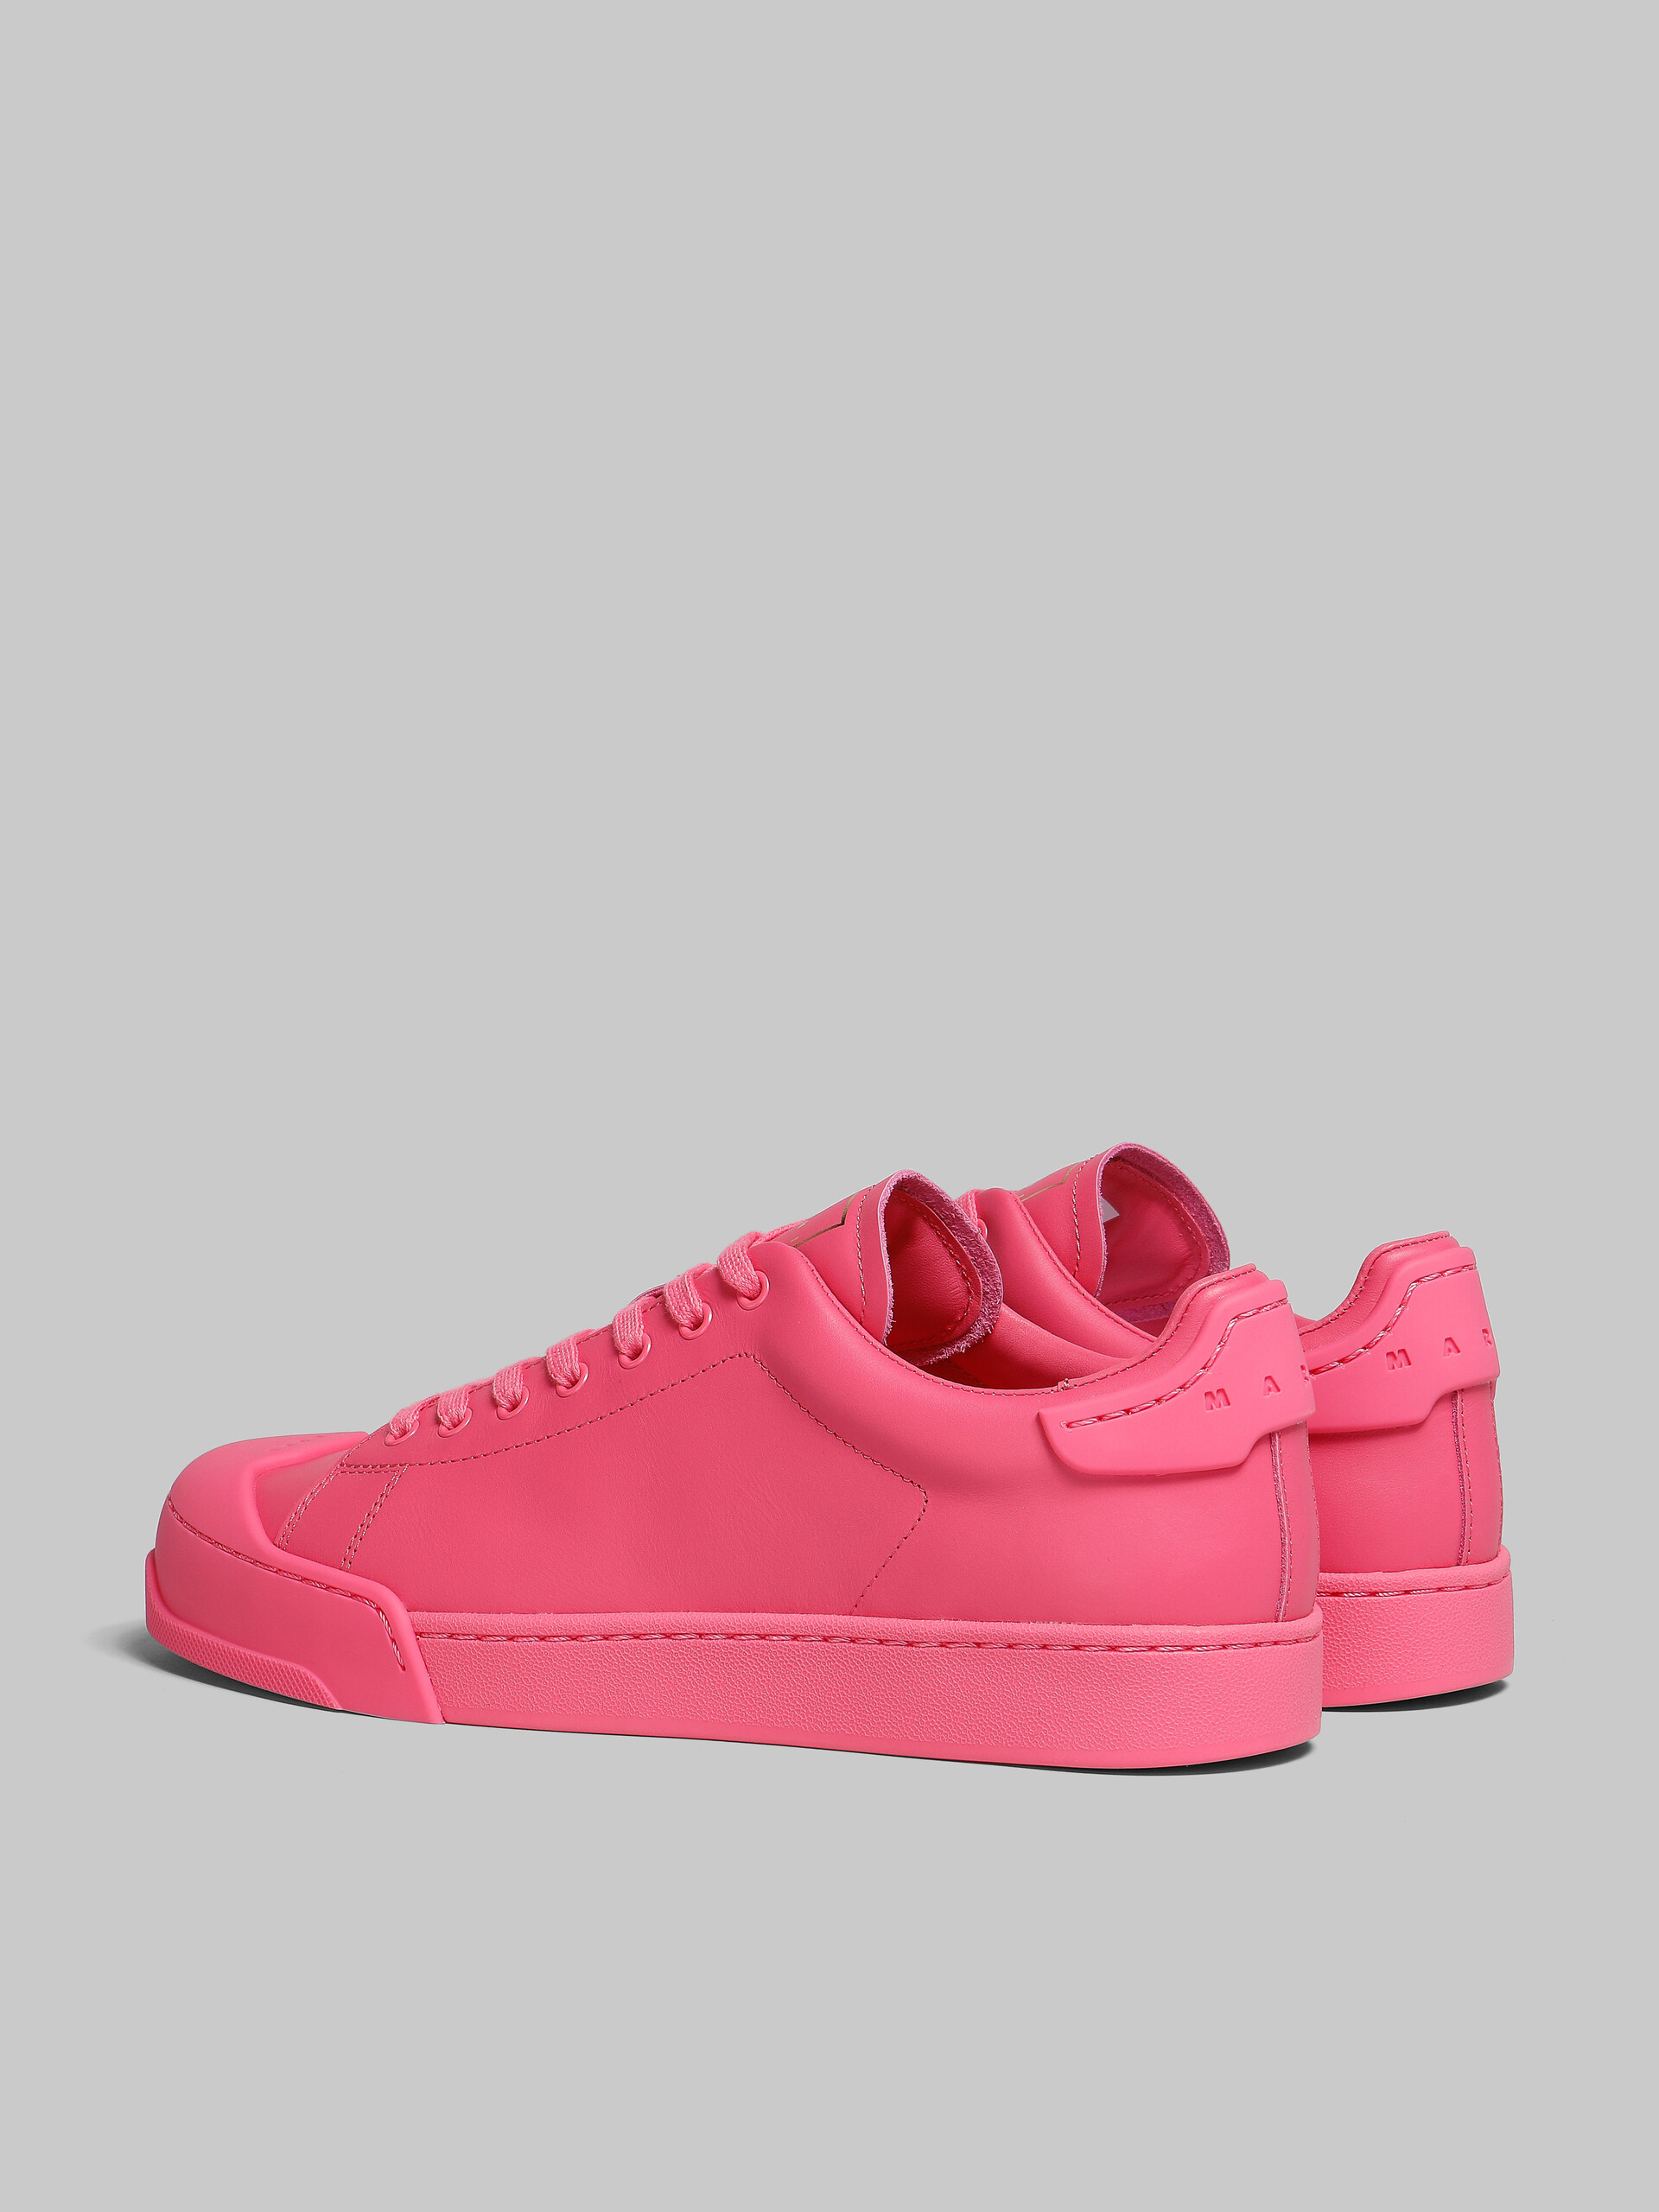 Pinkfarbene Sneakers Dada Bumper aus Leder - Sneakers - Image 3